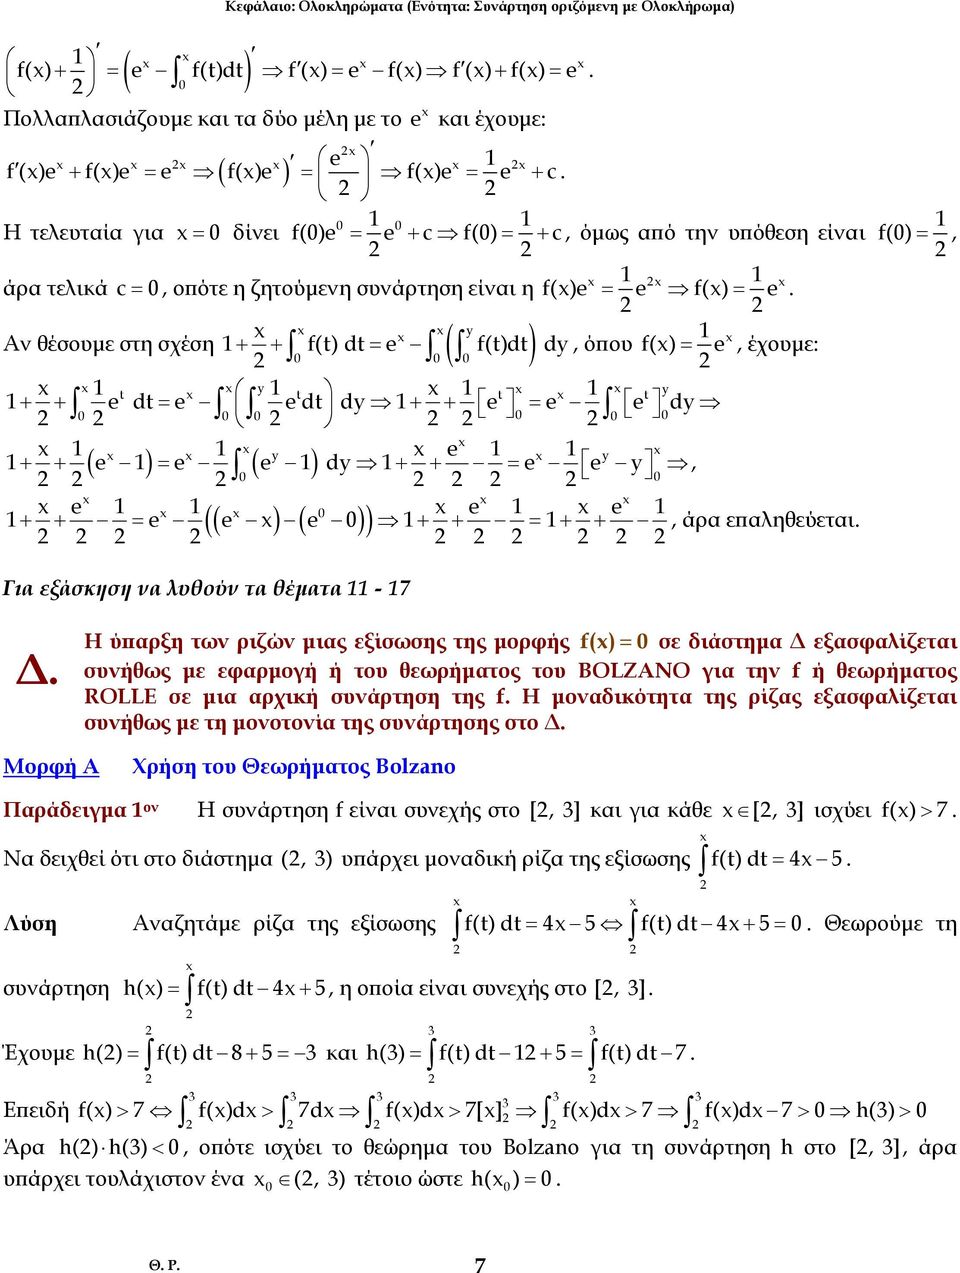 = + + = y y + ( ) ( ) dy y + = + + =, + + = (( ) ( ) ) + + = + +, άρ επληθεύετι f() =, Γι εξάσκηση ν λυθούν τ θέµτ - 7 Η ύπρξη των ριζών µις εξίσωσης της µορφής f() = σε διάστηµ εξσφλίζετι συνήθως µε